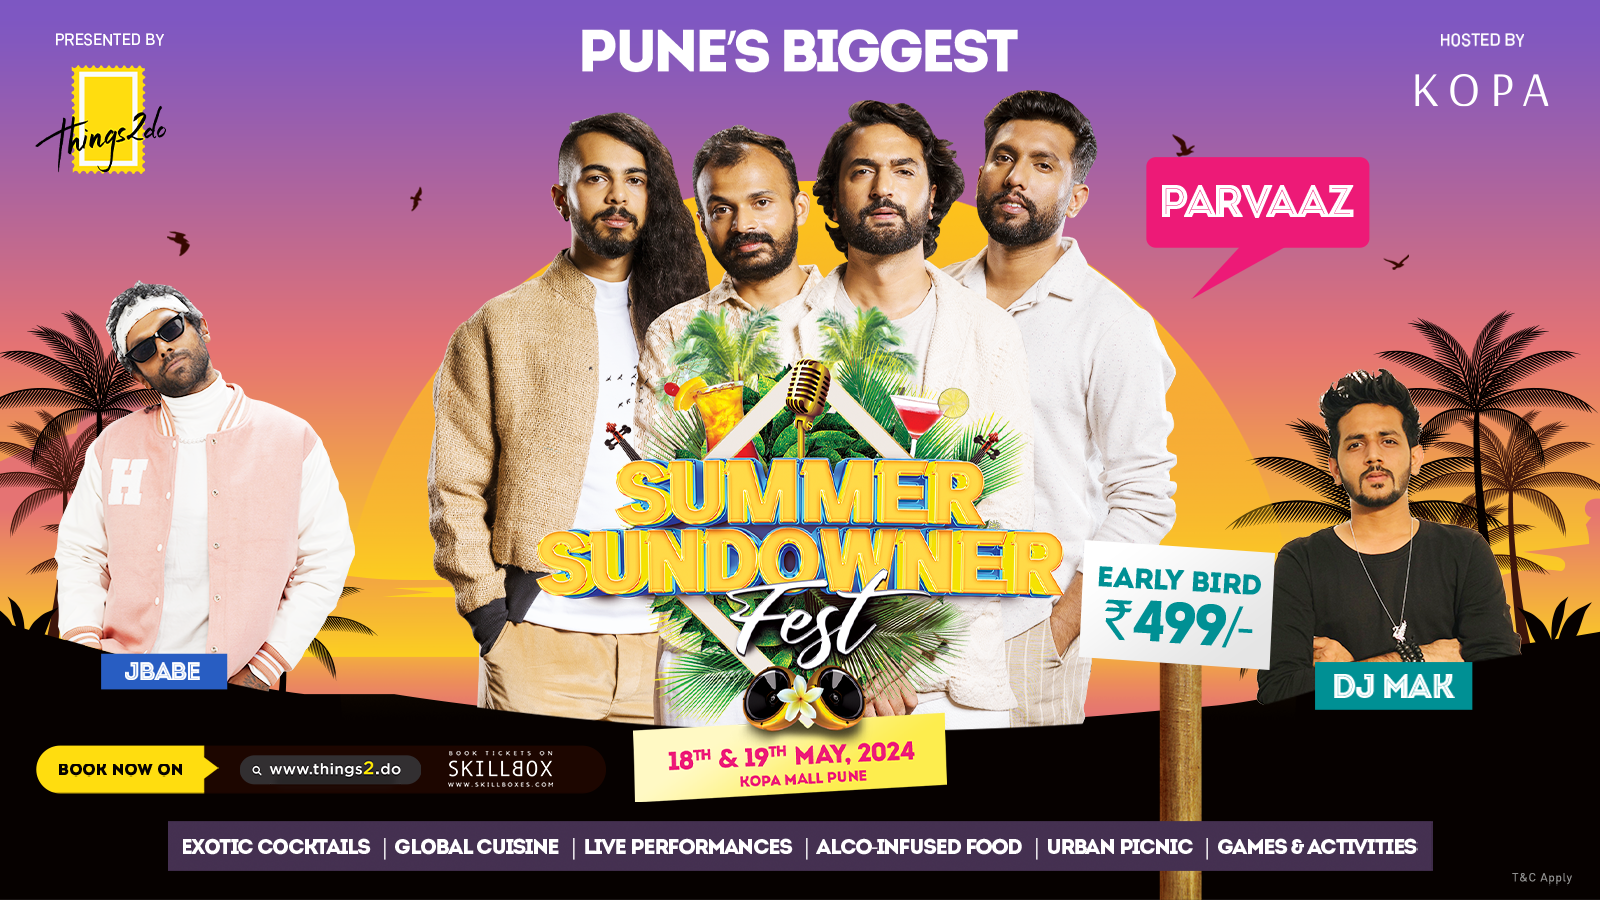 Image: Pune’s Biggest Summer Sundowner Fest